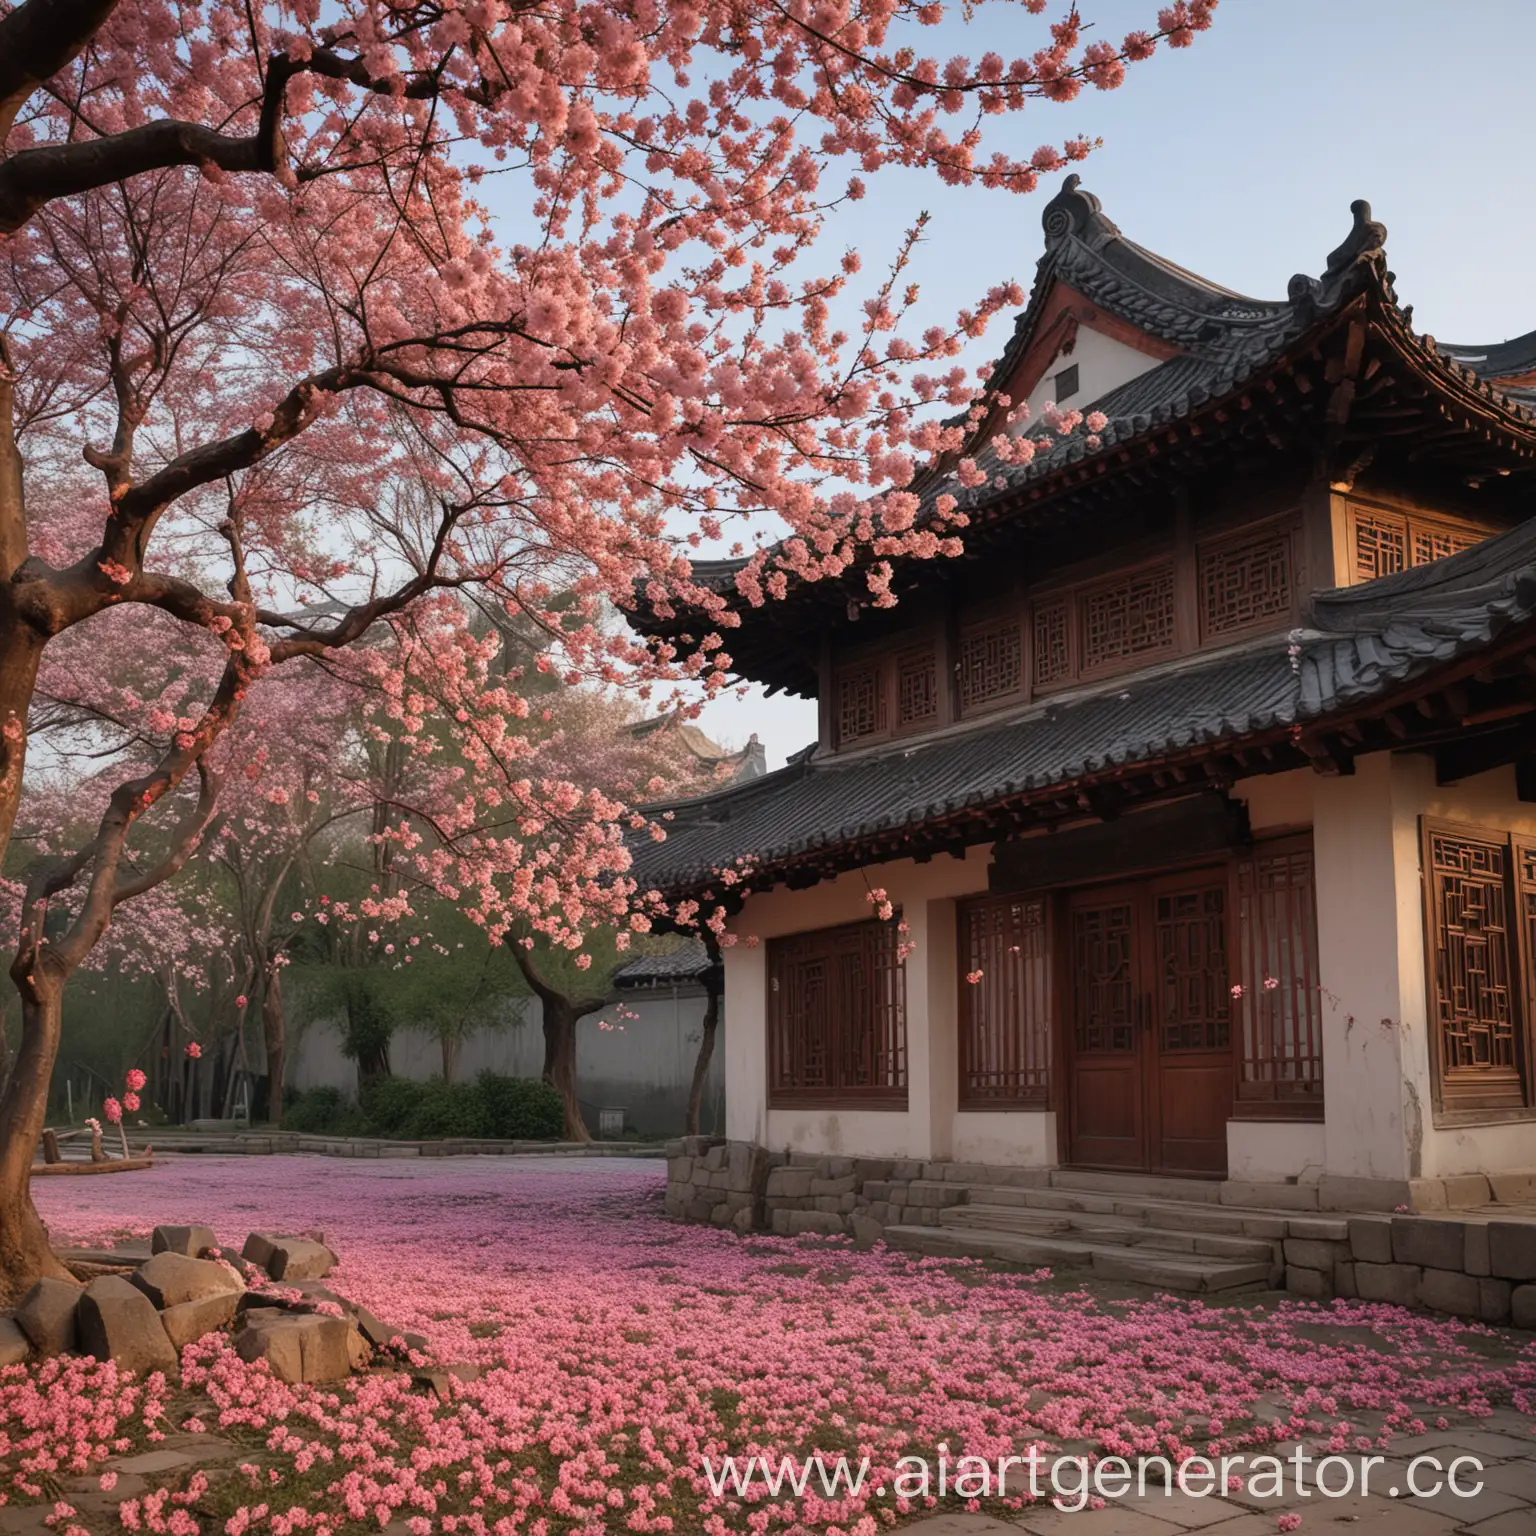 Футаж в китае возле китайского дома, опадающая цветущая сакура по краям, время суток: день